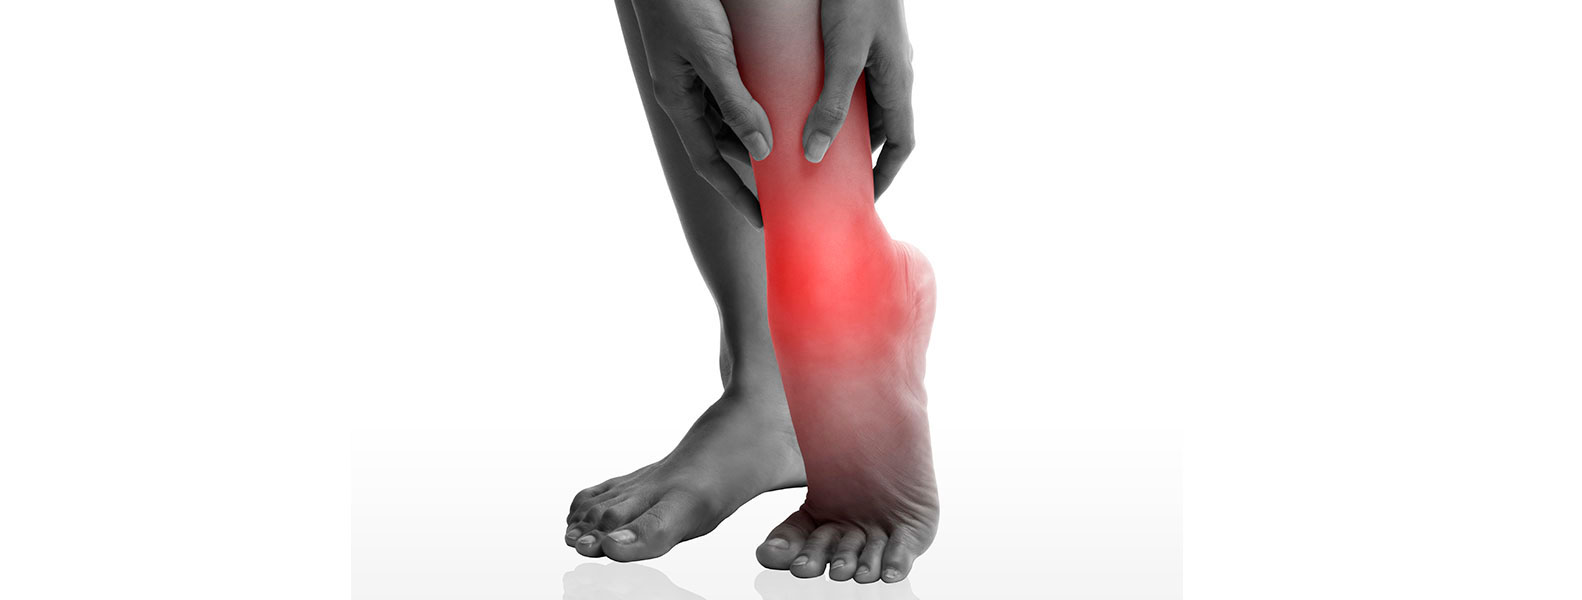 Artrosis de tobillo: una enfermedad que puede ser invalidante